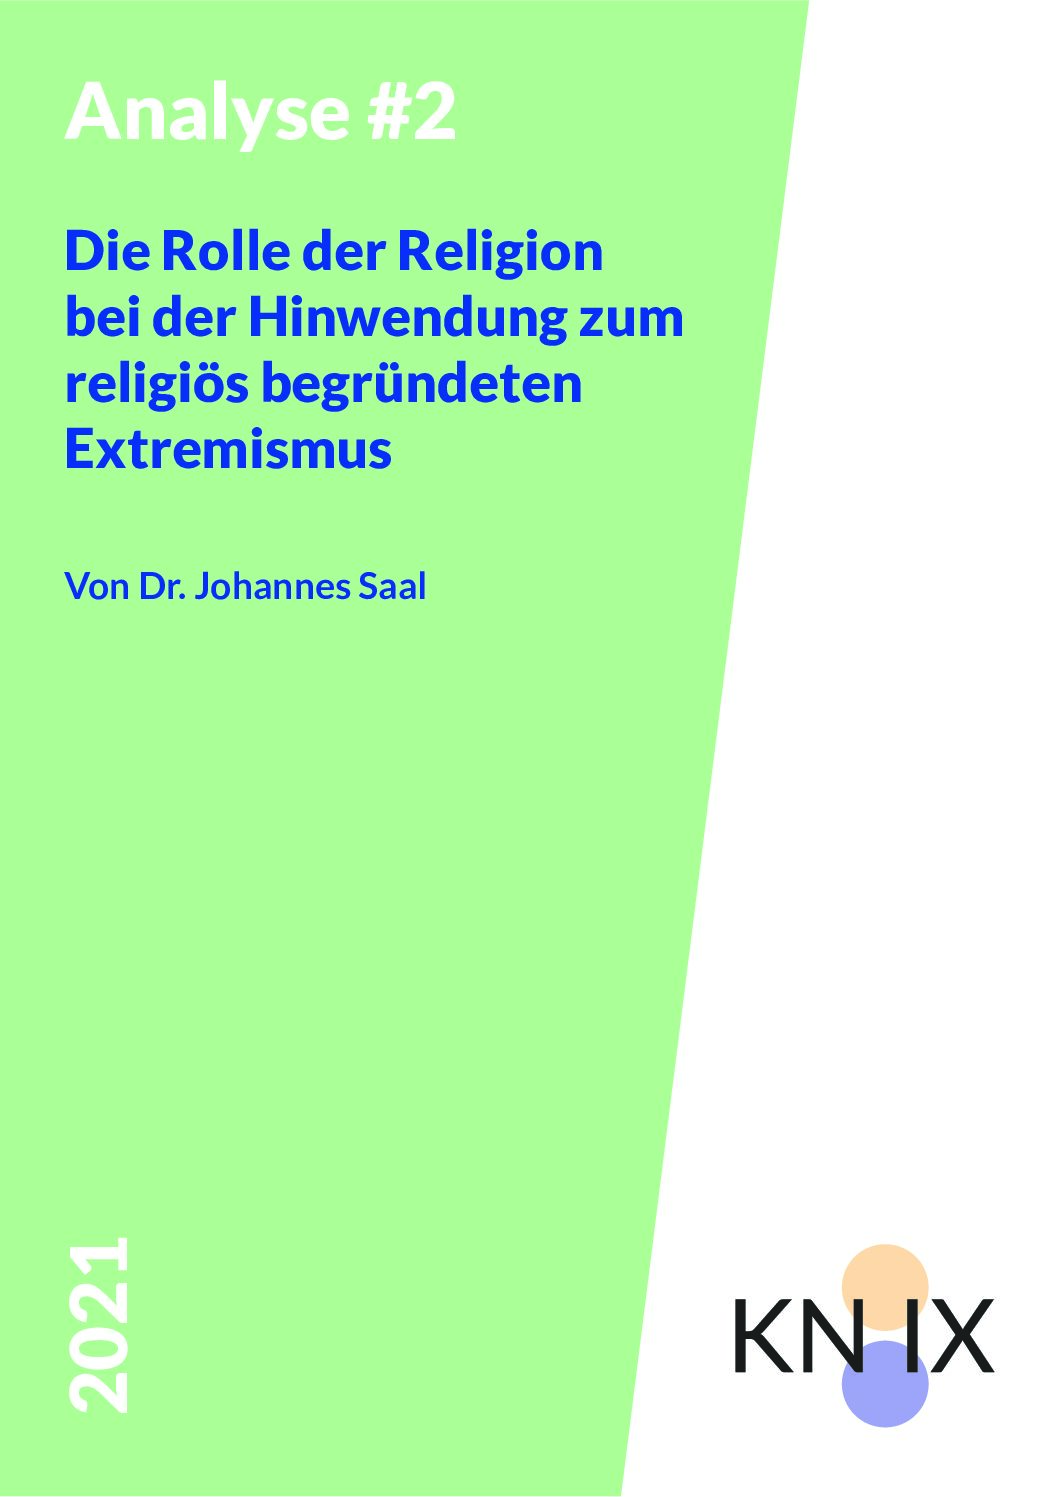 2021_Rolle der Religion_BAG-RelEx_KNIX_Analyse2